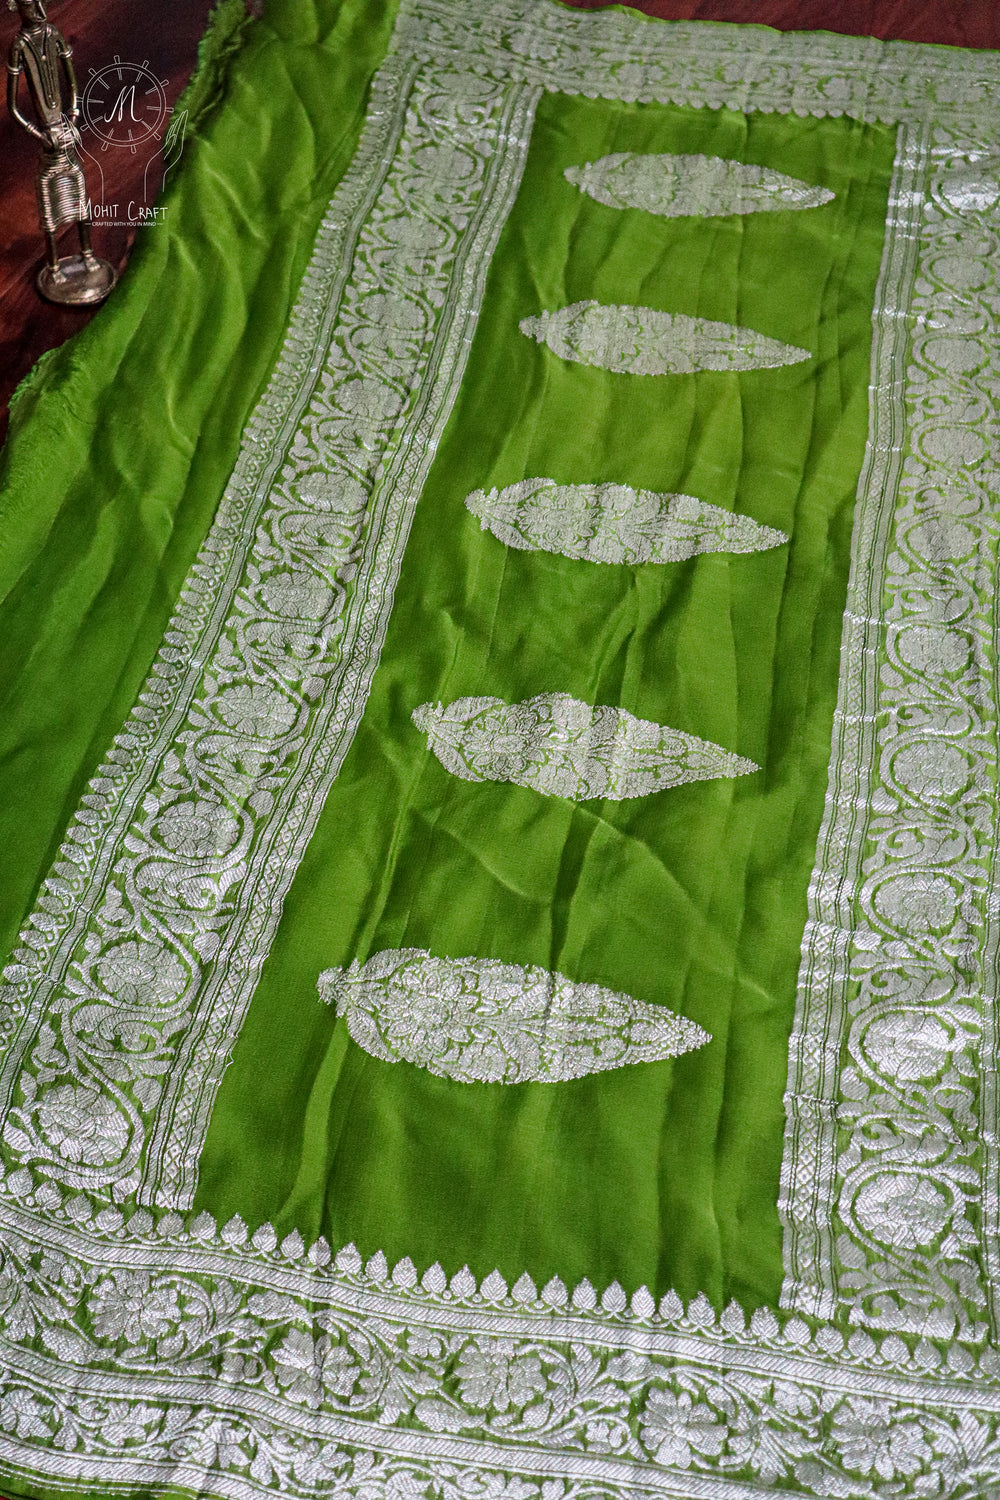  Buy Indian Dress in USA |Banarasi Khaddi Chiffon Saree with Silver Zari